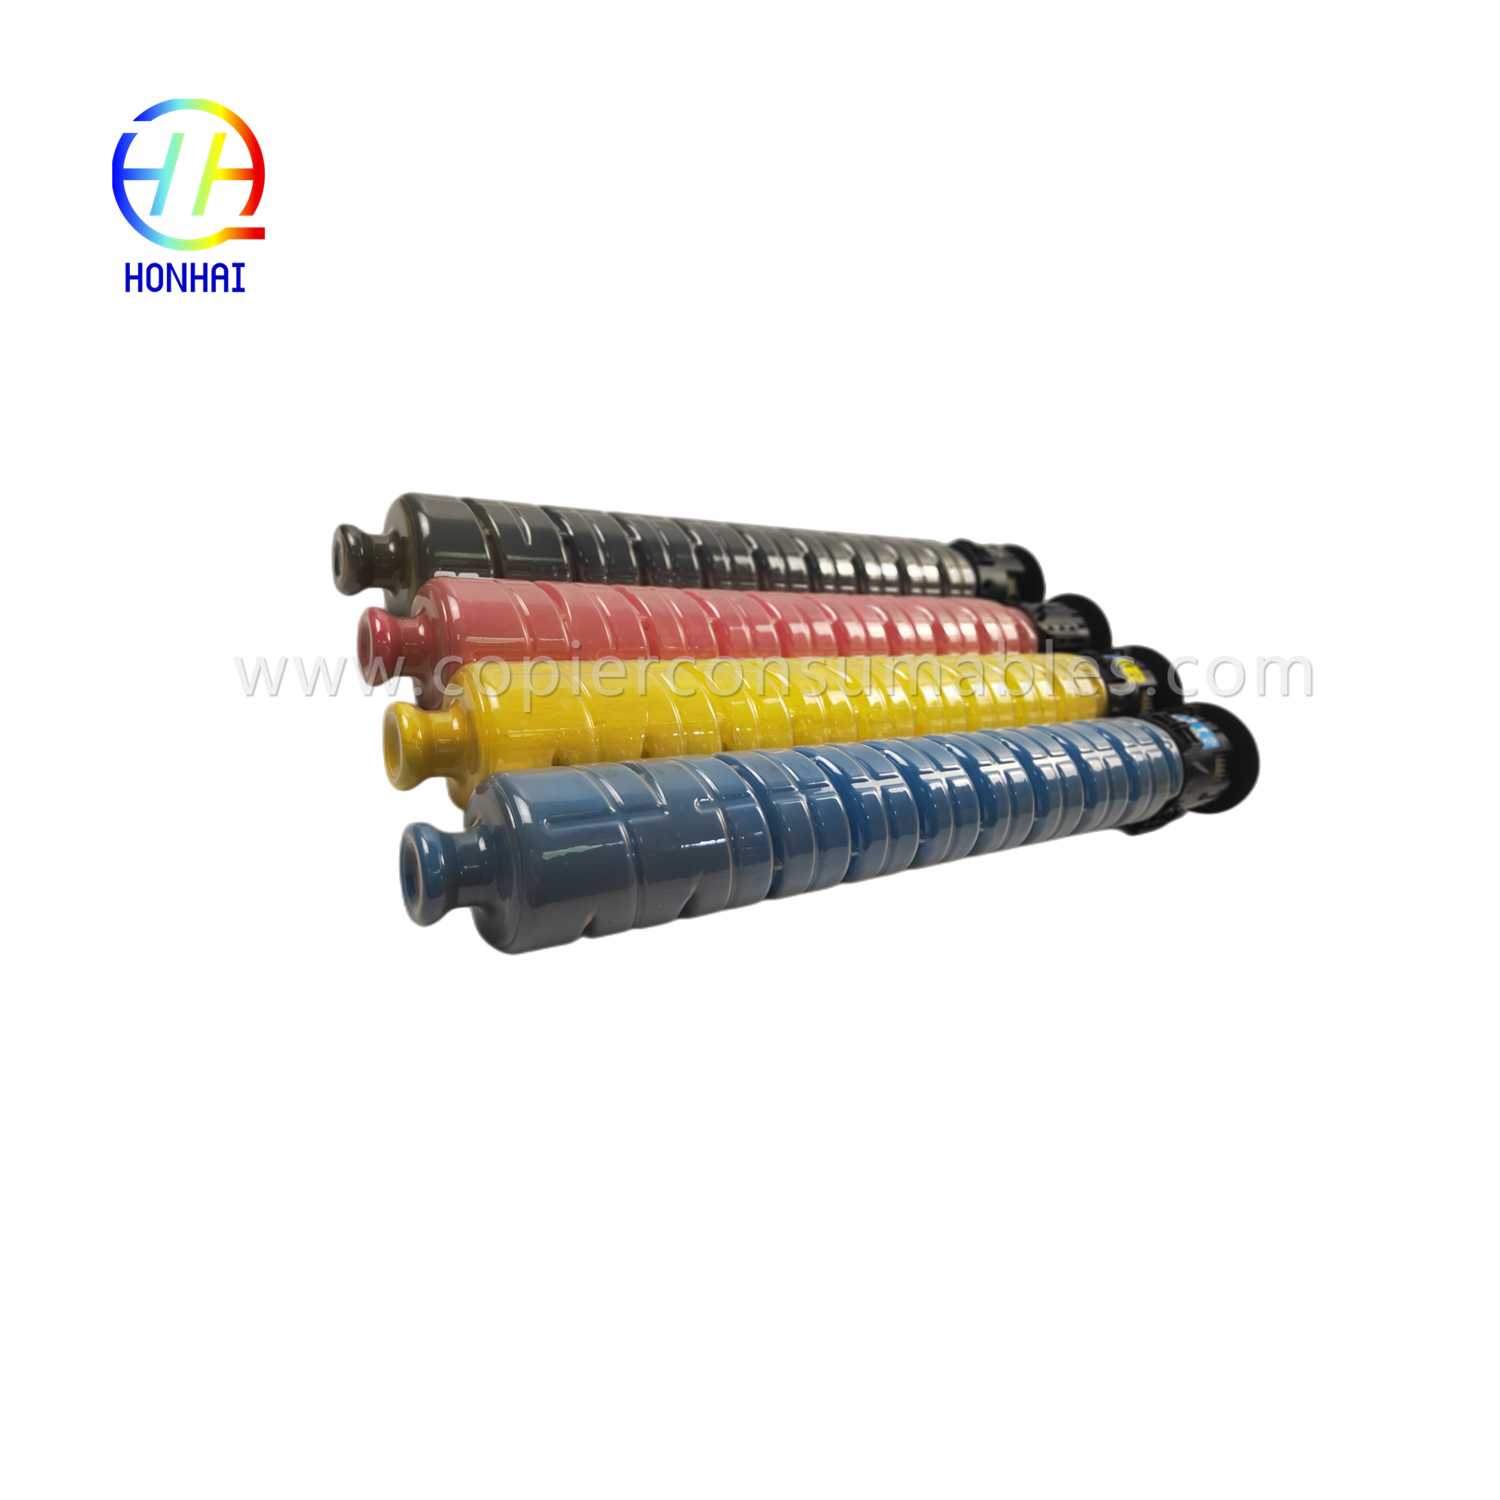 Toner Cartridge 4 Color Set para sa Ricoh 841849 841852 841851 841850 MPC4503 MPC5503 MPC6003 MPC3004ex MPC3504ex MPC4504 MPC4504 ex MPC4504ex MPC6004